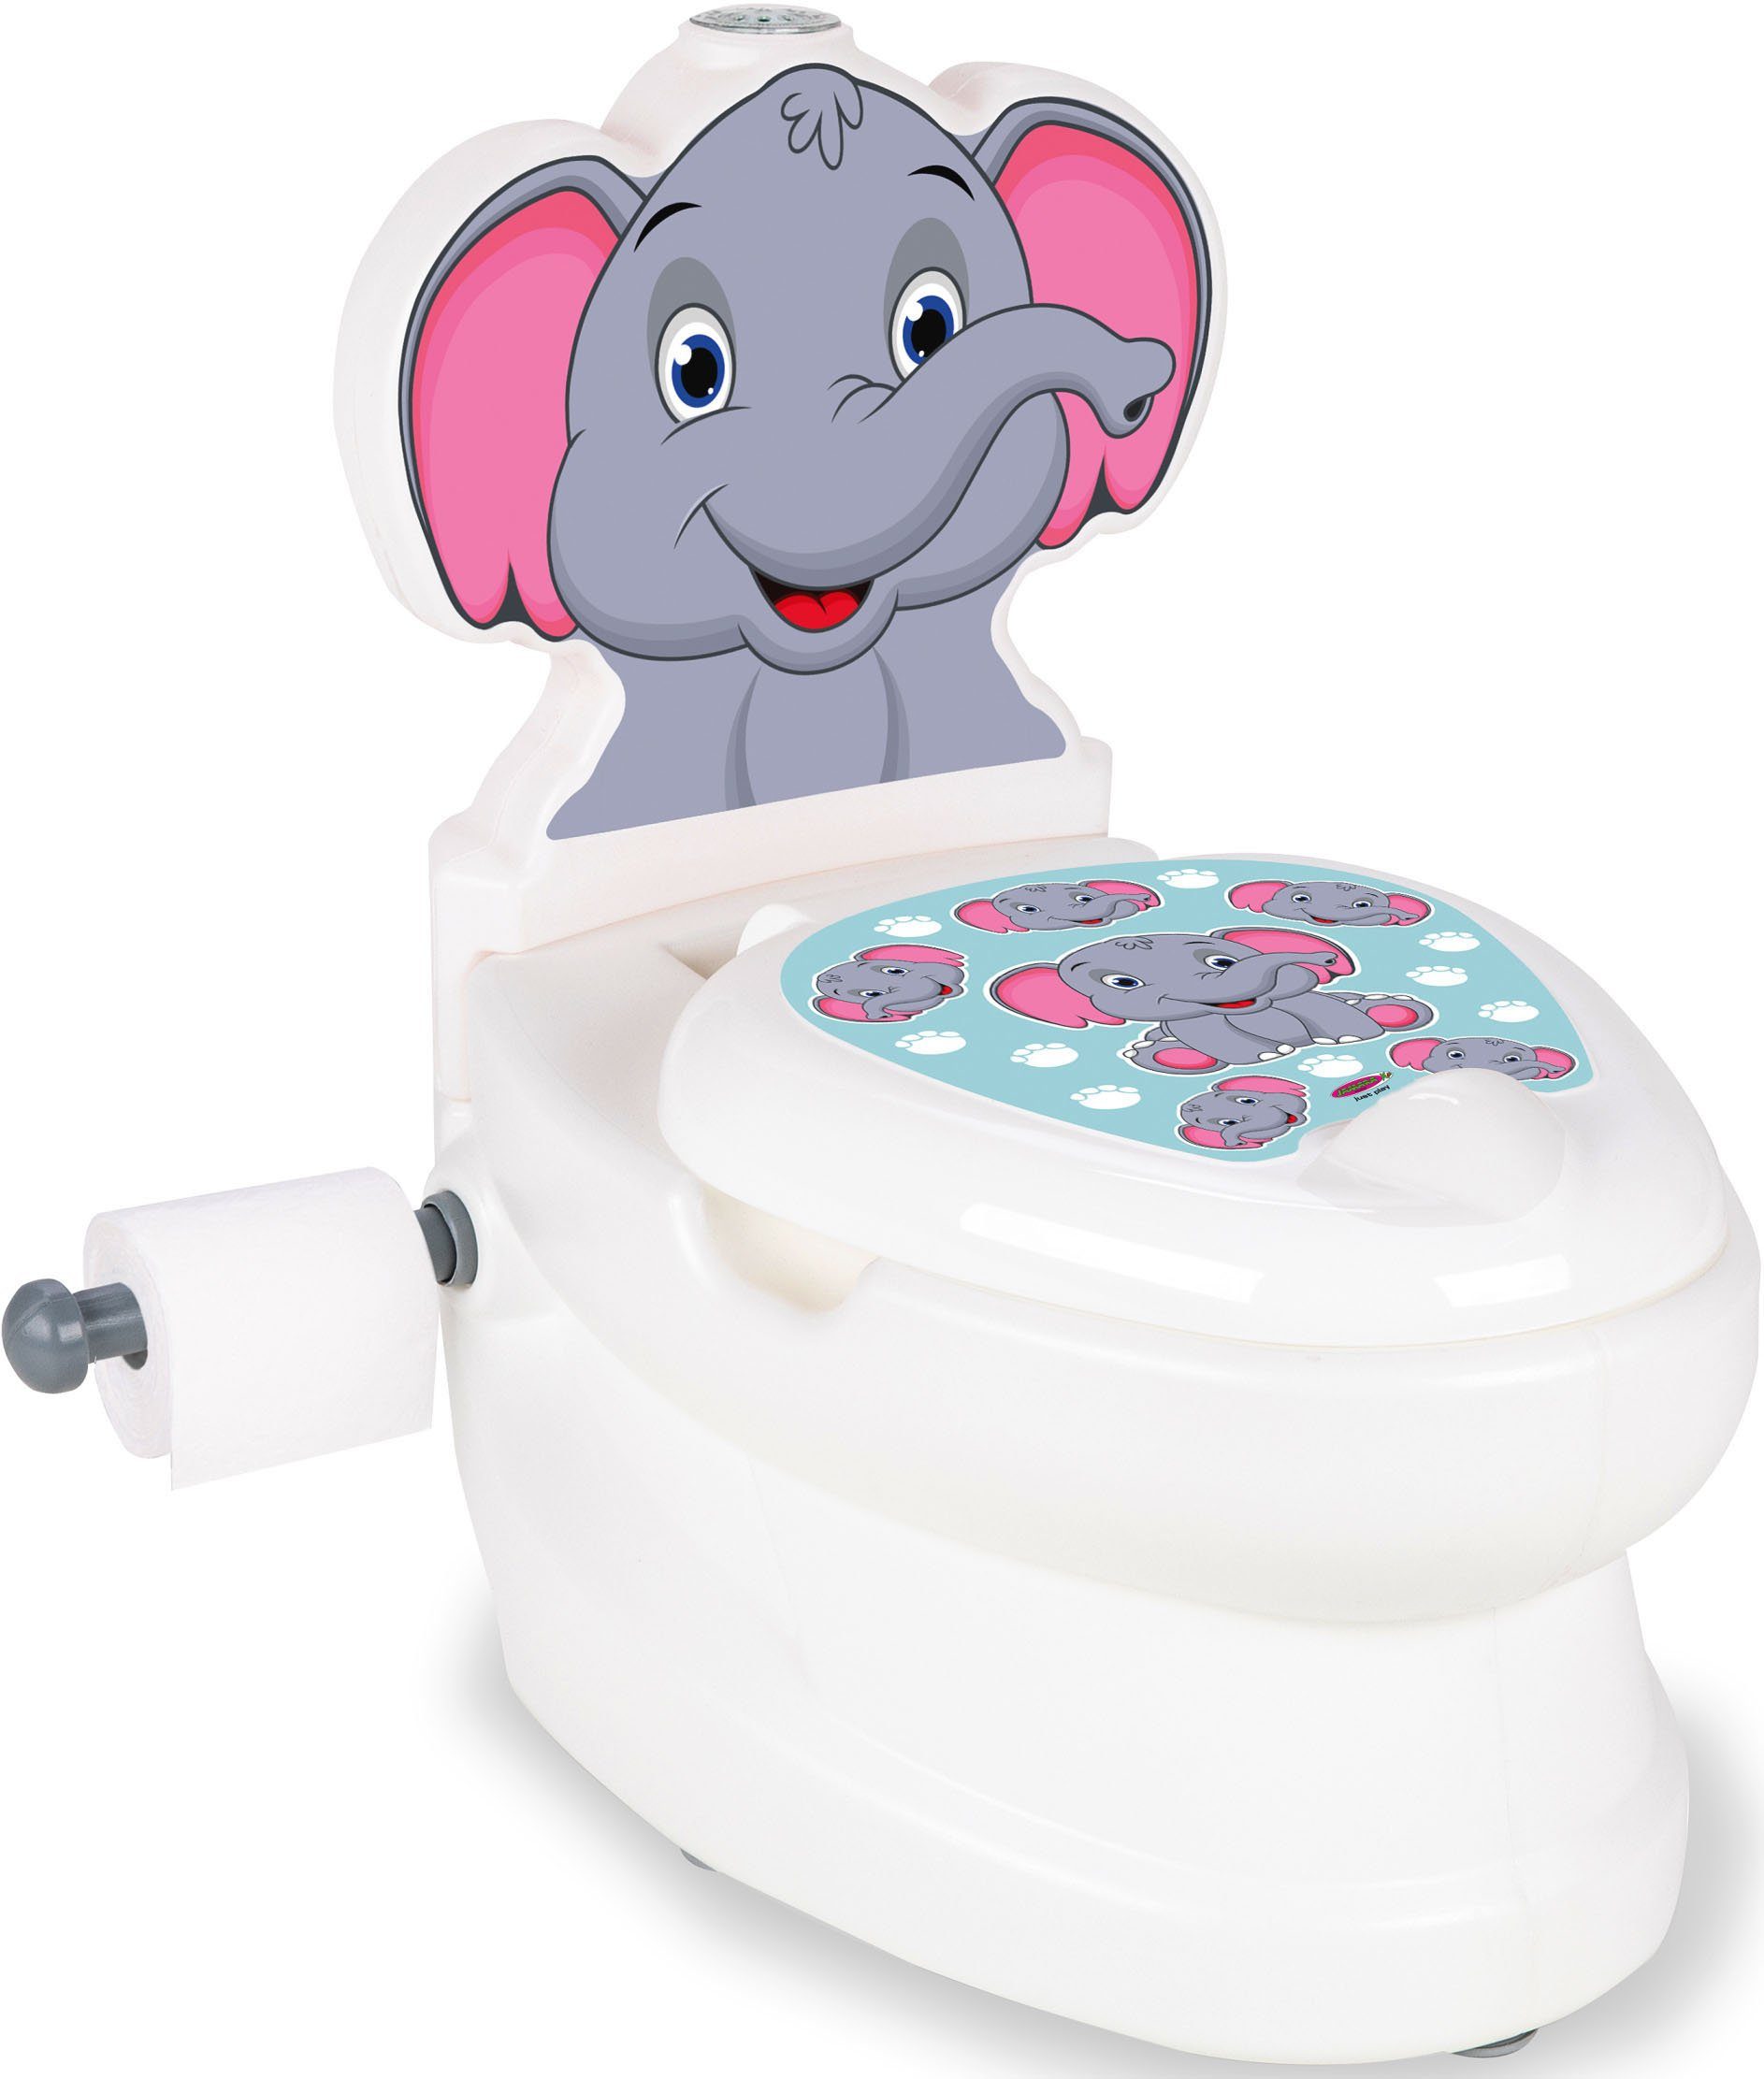 Jamara Toilettentrainer Meine kleine Toilette, Elefant, mit Spülsound und Toilettenpapierhalter